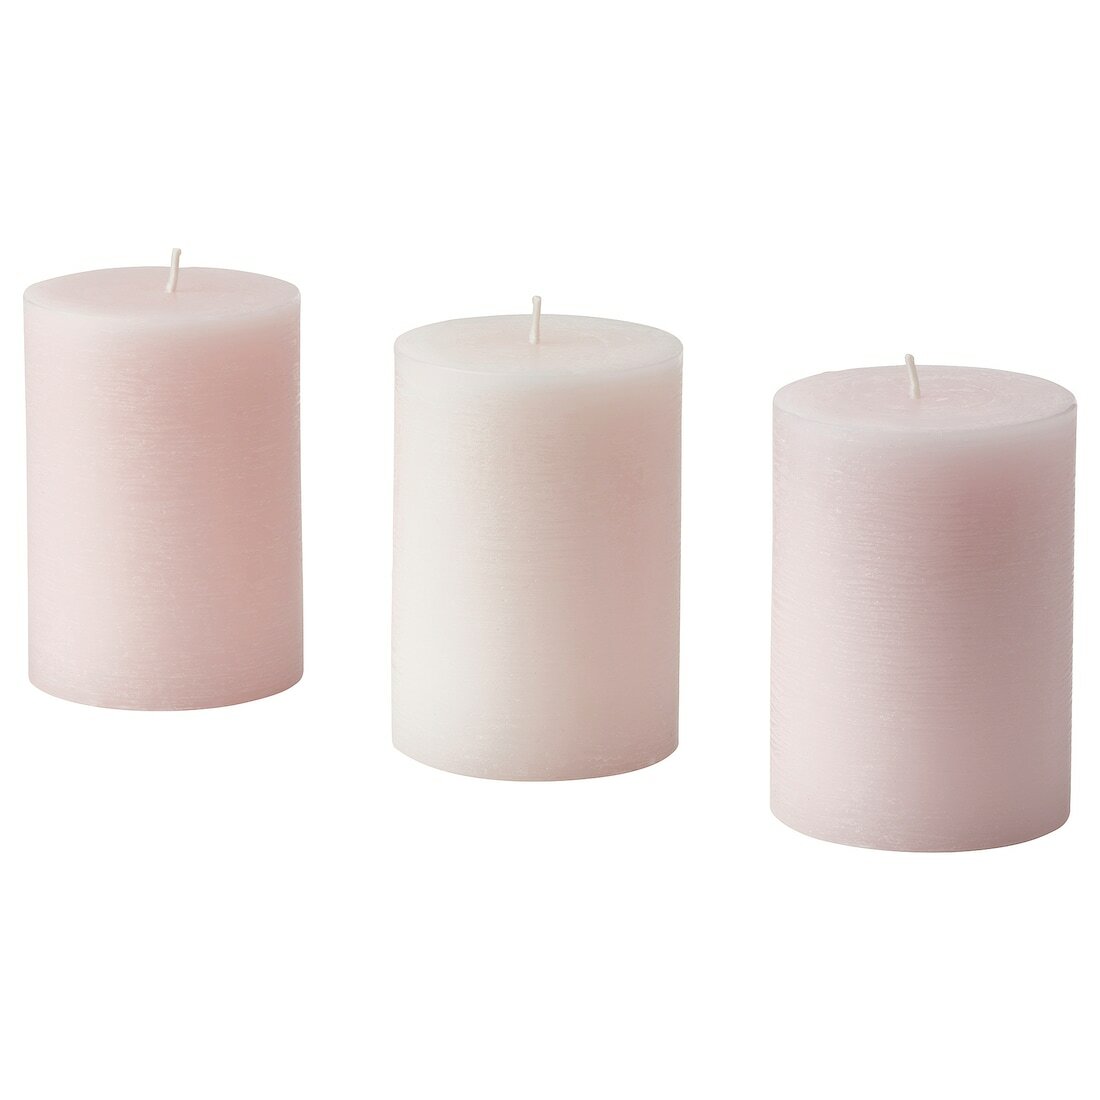 Ароматическая формовая свеча икеа лугнаре, 3 шт, жасмин/розовый